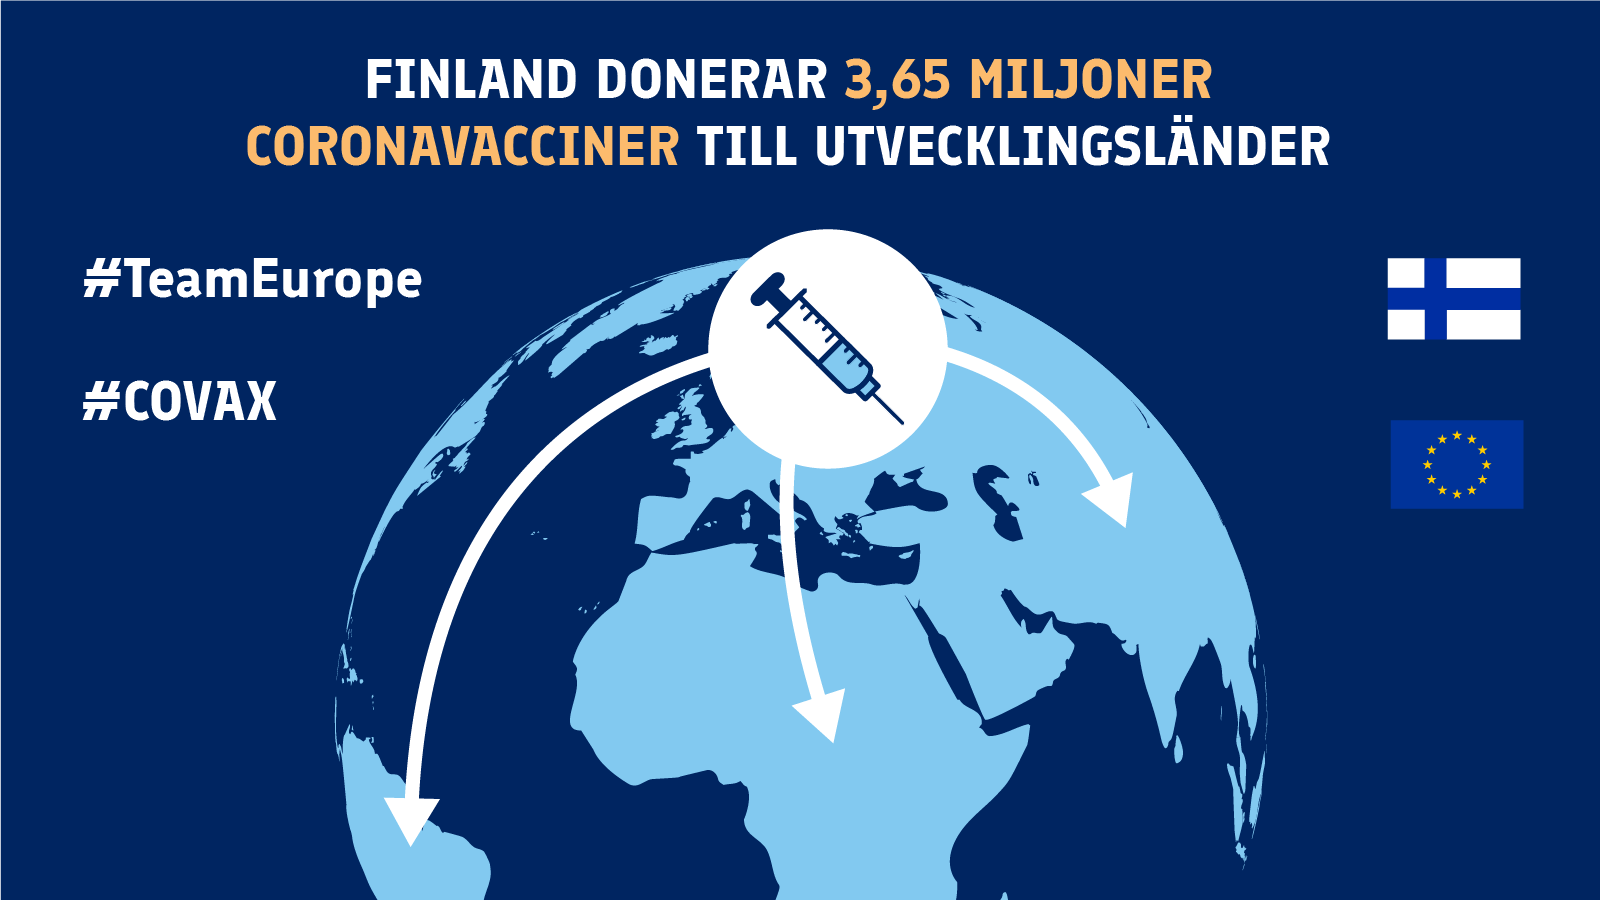 Finland donerar 3,65 miljoner koronavacciner till utvecklingsländer.